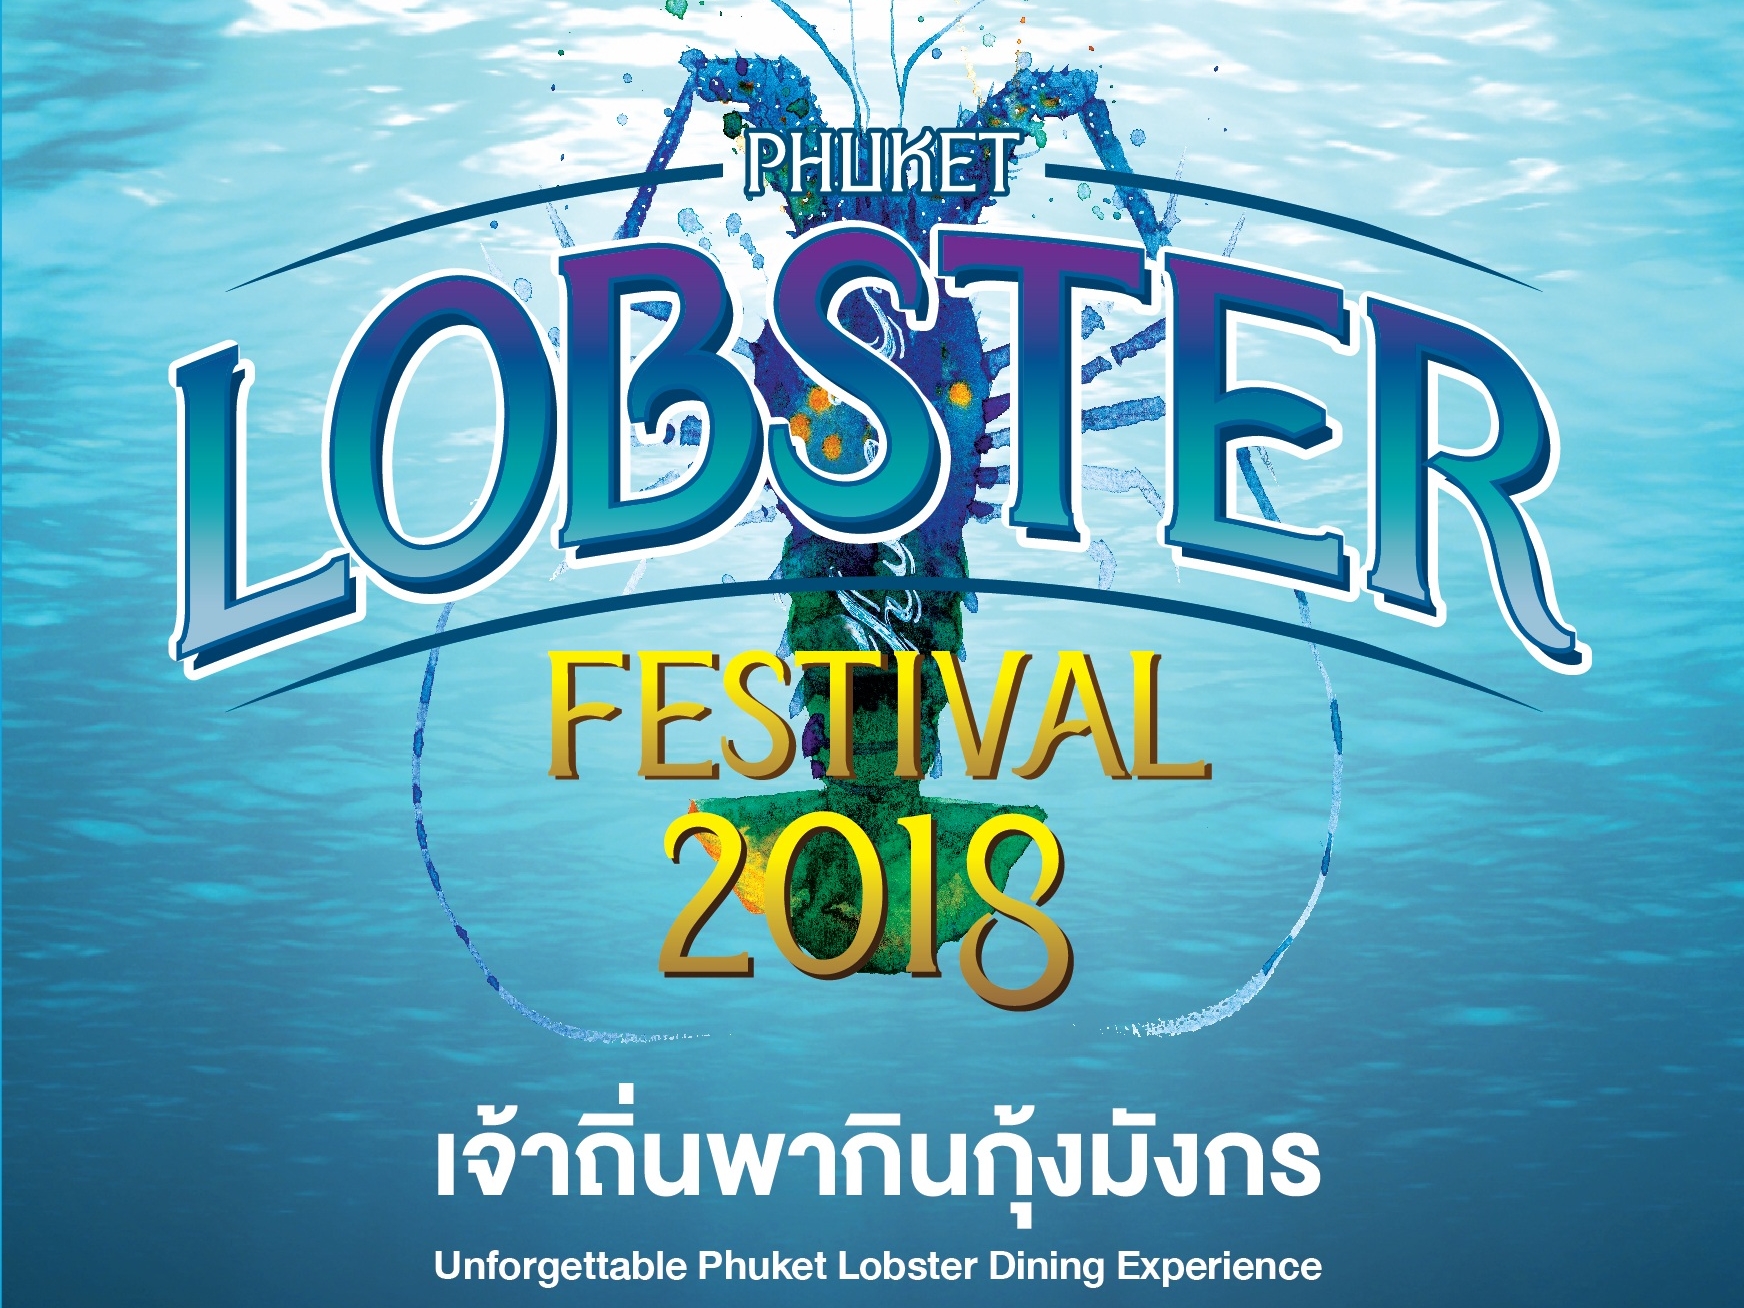 บริษัท ประชารัฐรักสามัคคีภูเก็ตฯ จัดงาน Phuket Lobster Festival 2018 